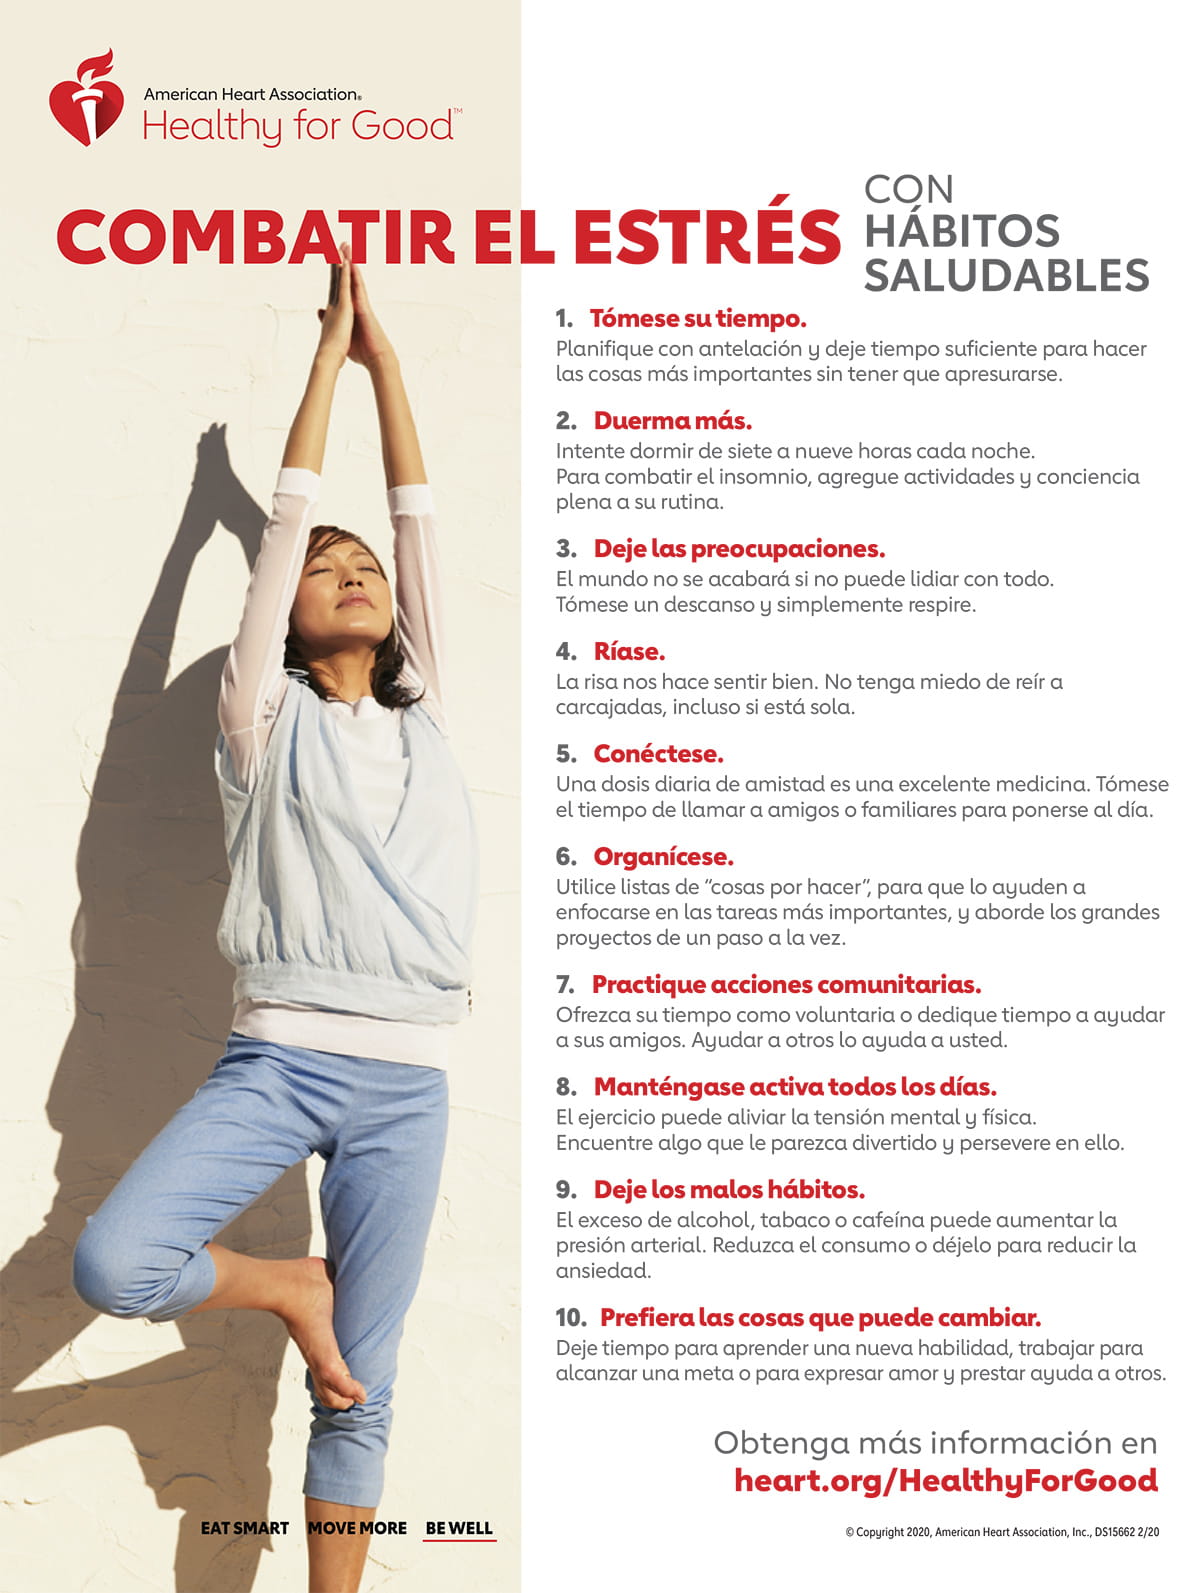 用西班牙语的健康习惯信息图对抗压力